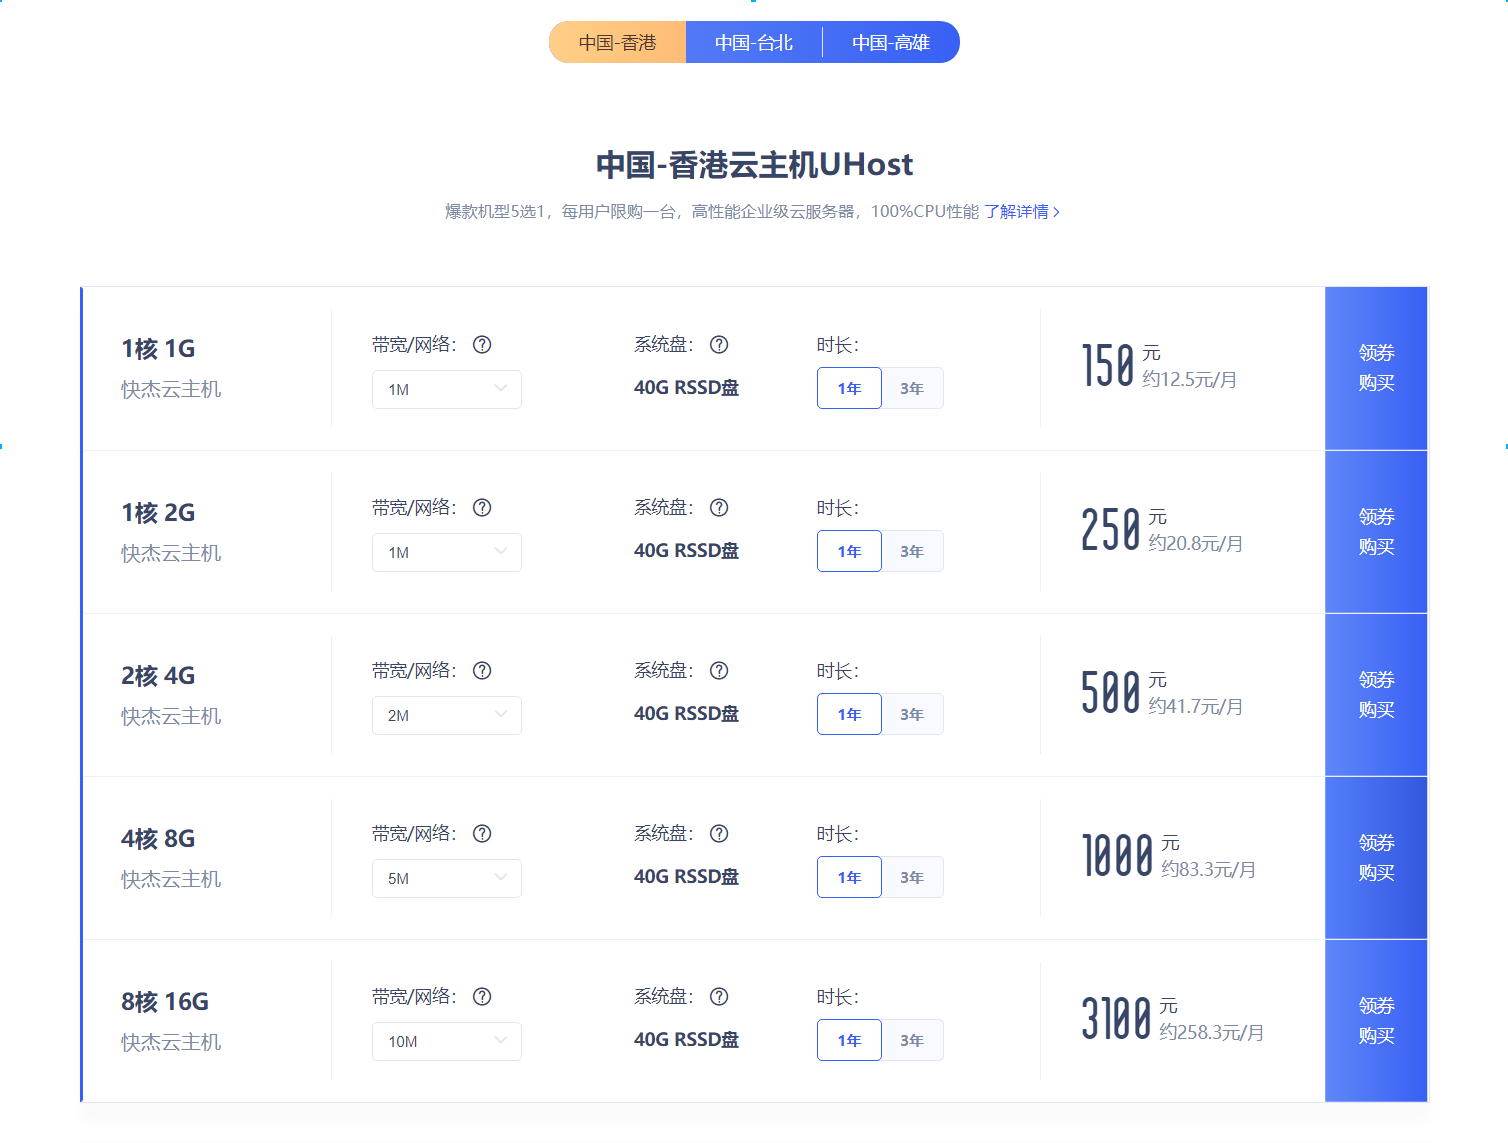 Ucloud 香港/台湾/国内服务器 最低88元/年 大厂品质 值得信赖